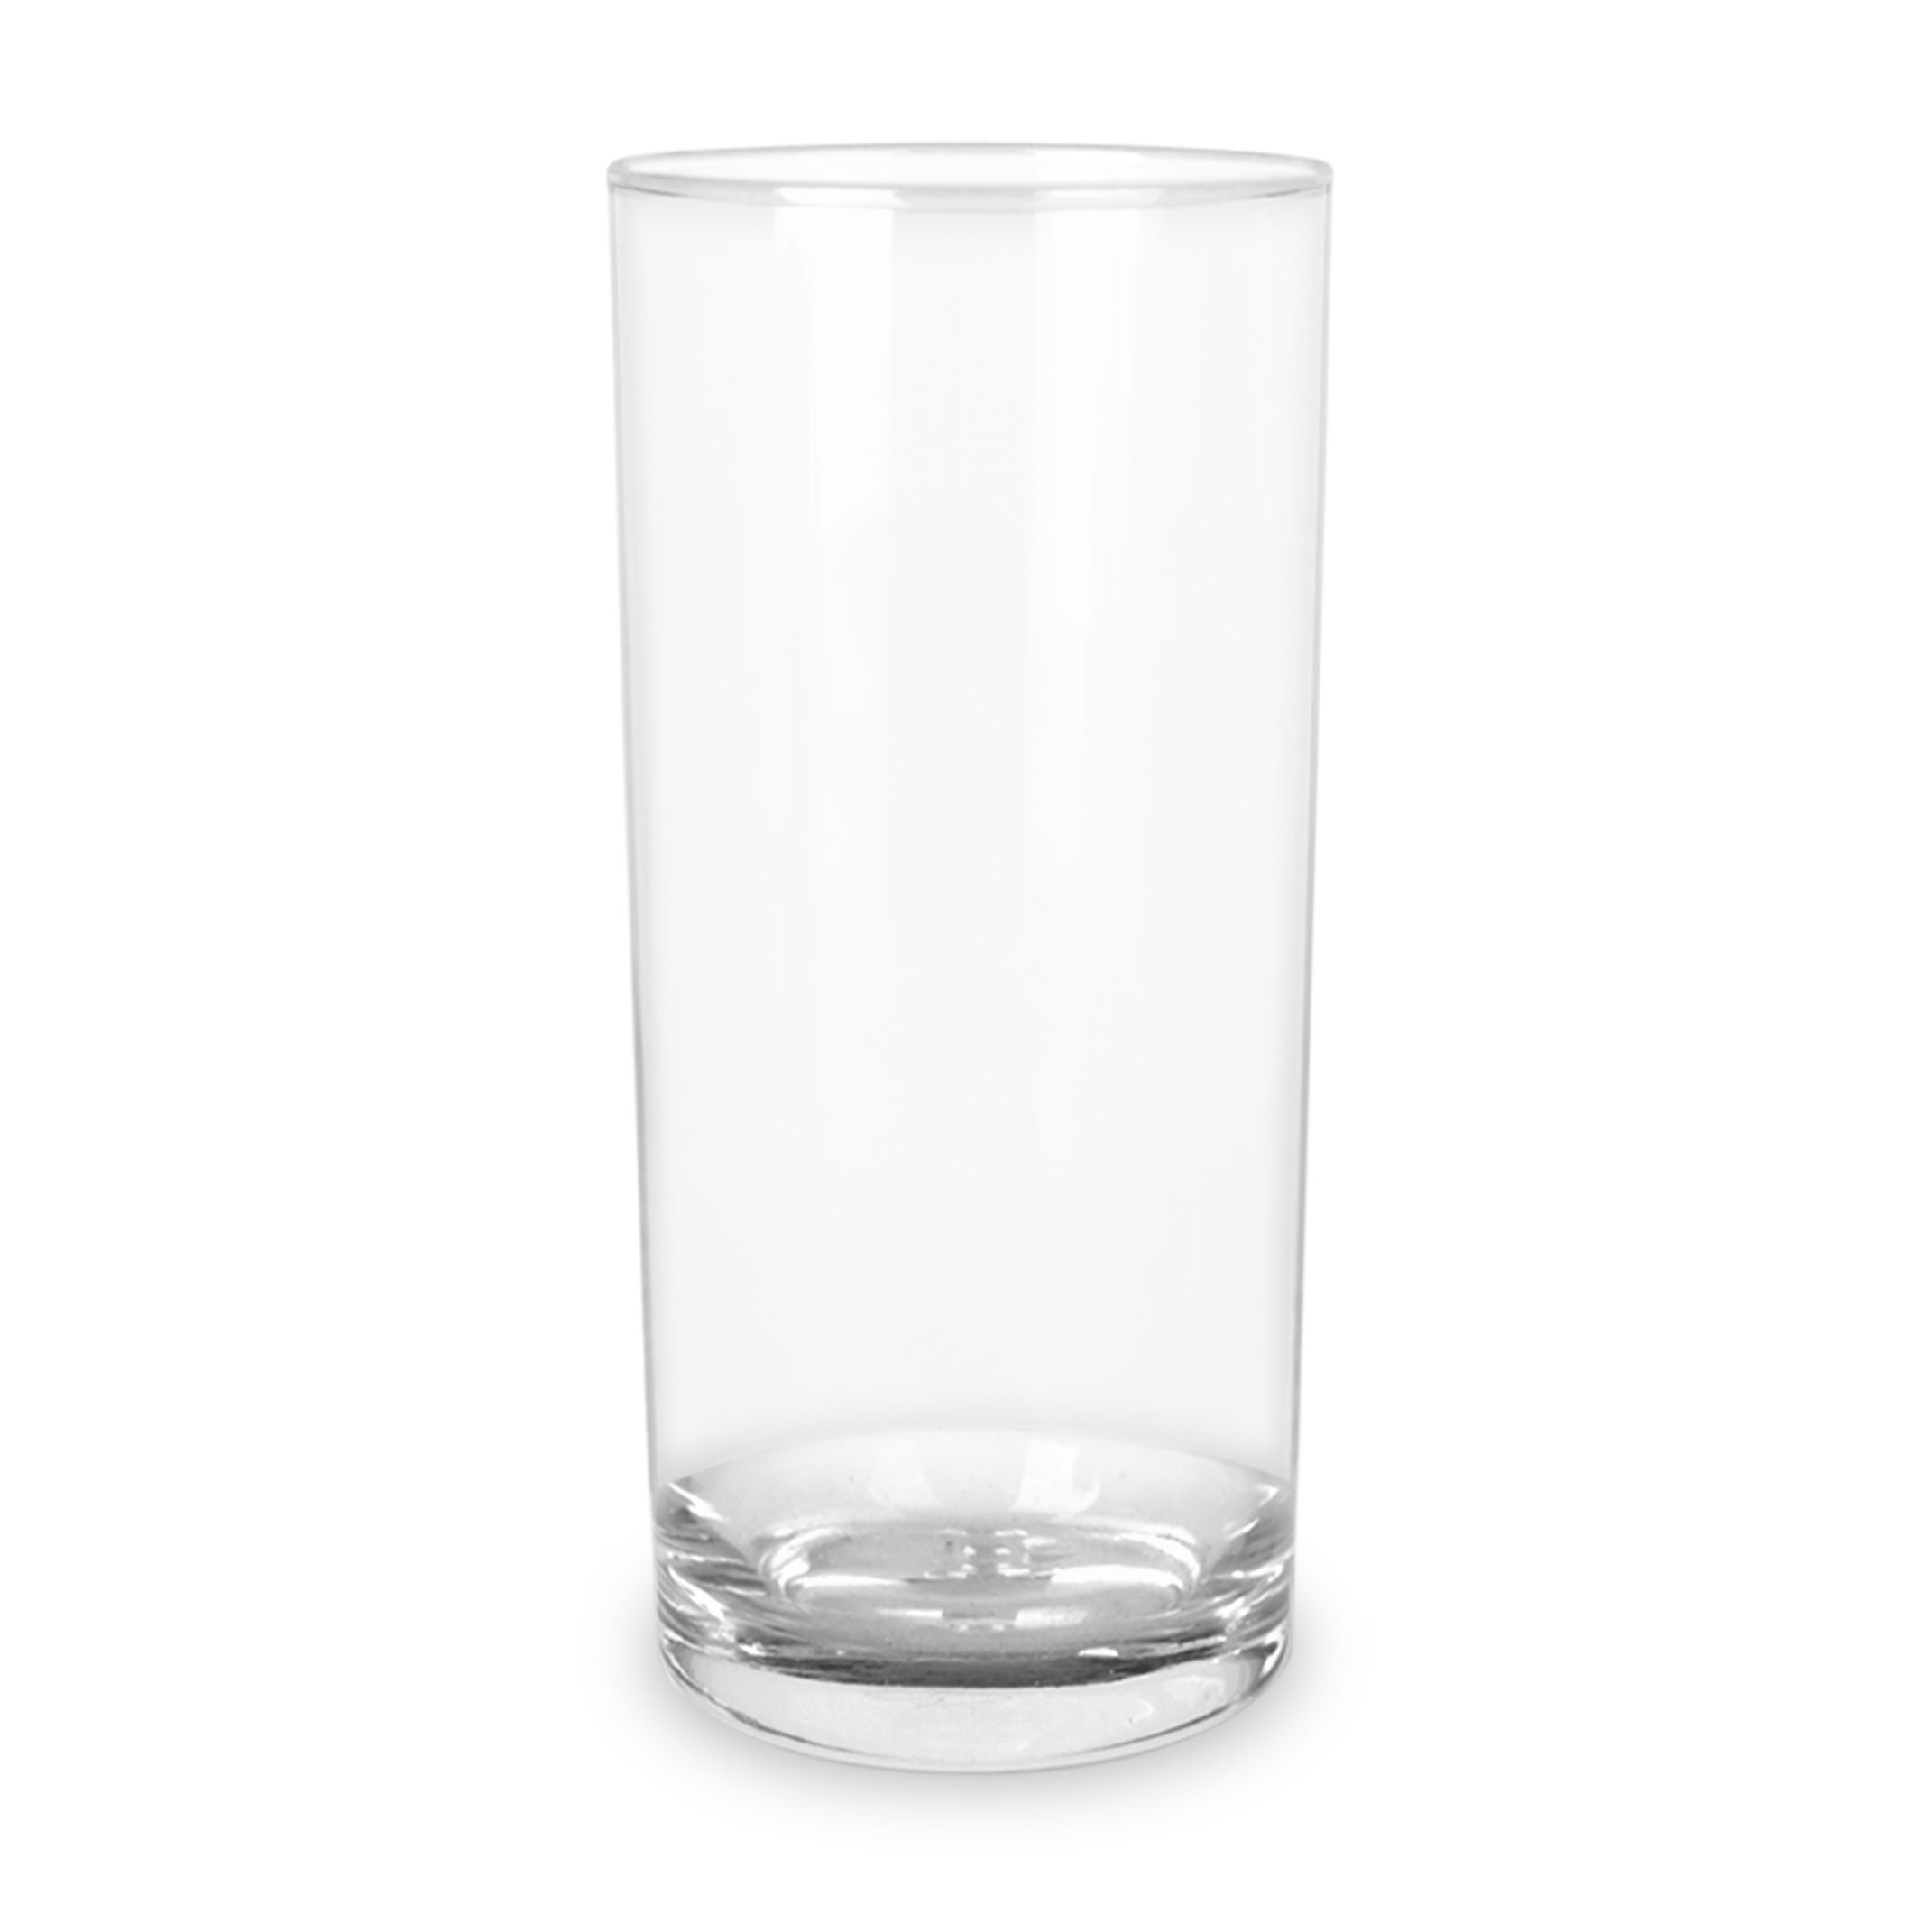 Mr. & Mrs. Panda Glas 200 ml Avocado Party - Transparent - Geschenk, Glas mit Gravur, Gesun, Premium Glas, Magische Gravuren